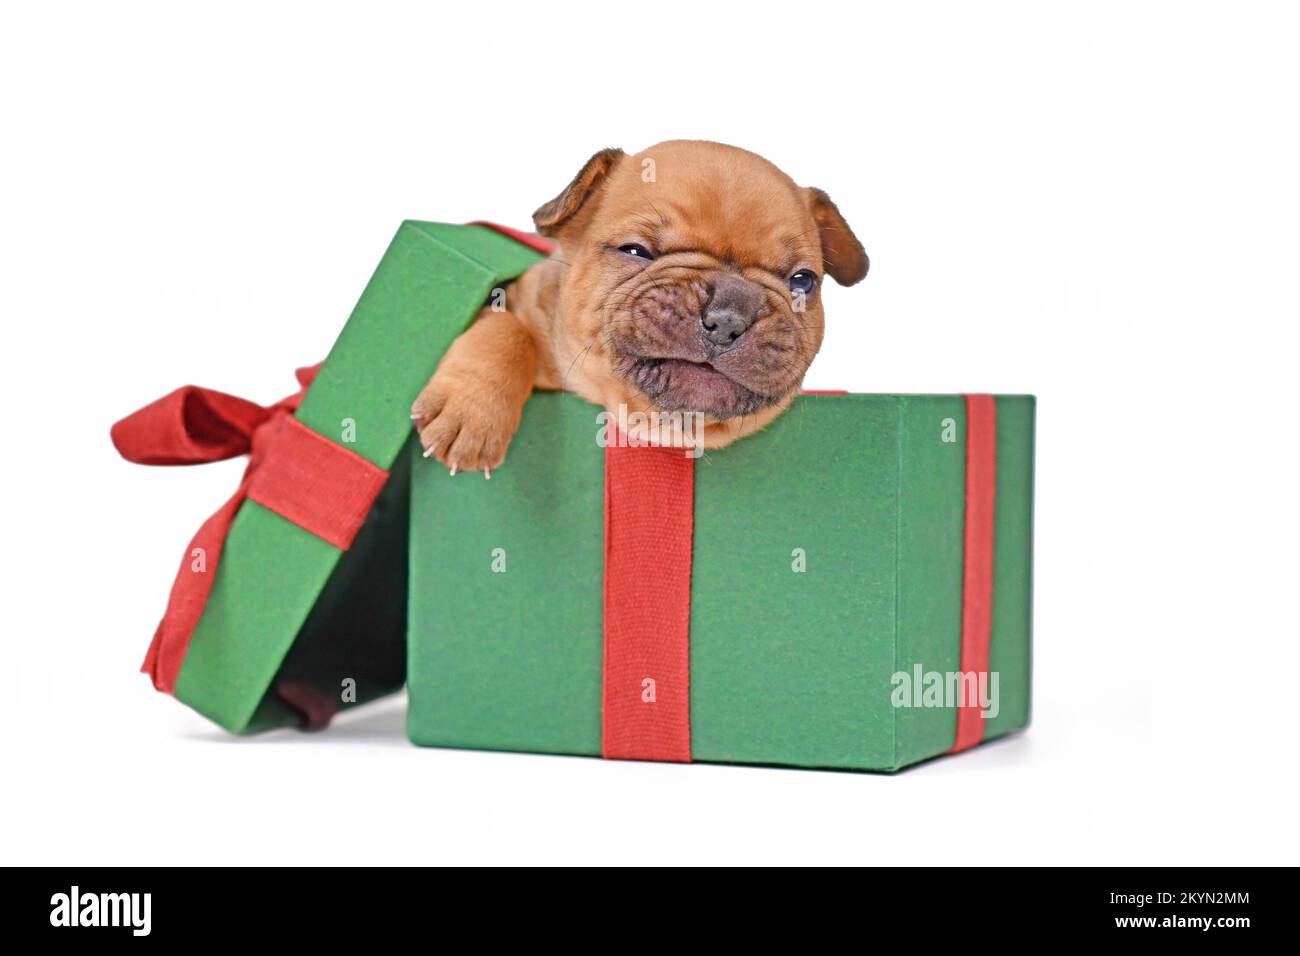 Drôle de fauve rouge chien Bulldog chiot assis dans la boîte-cadeau de Noël verte sur fond blanc Banque D'Images